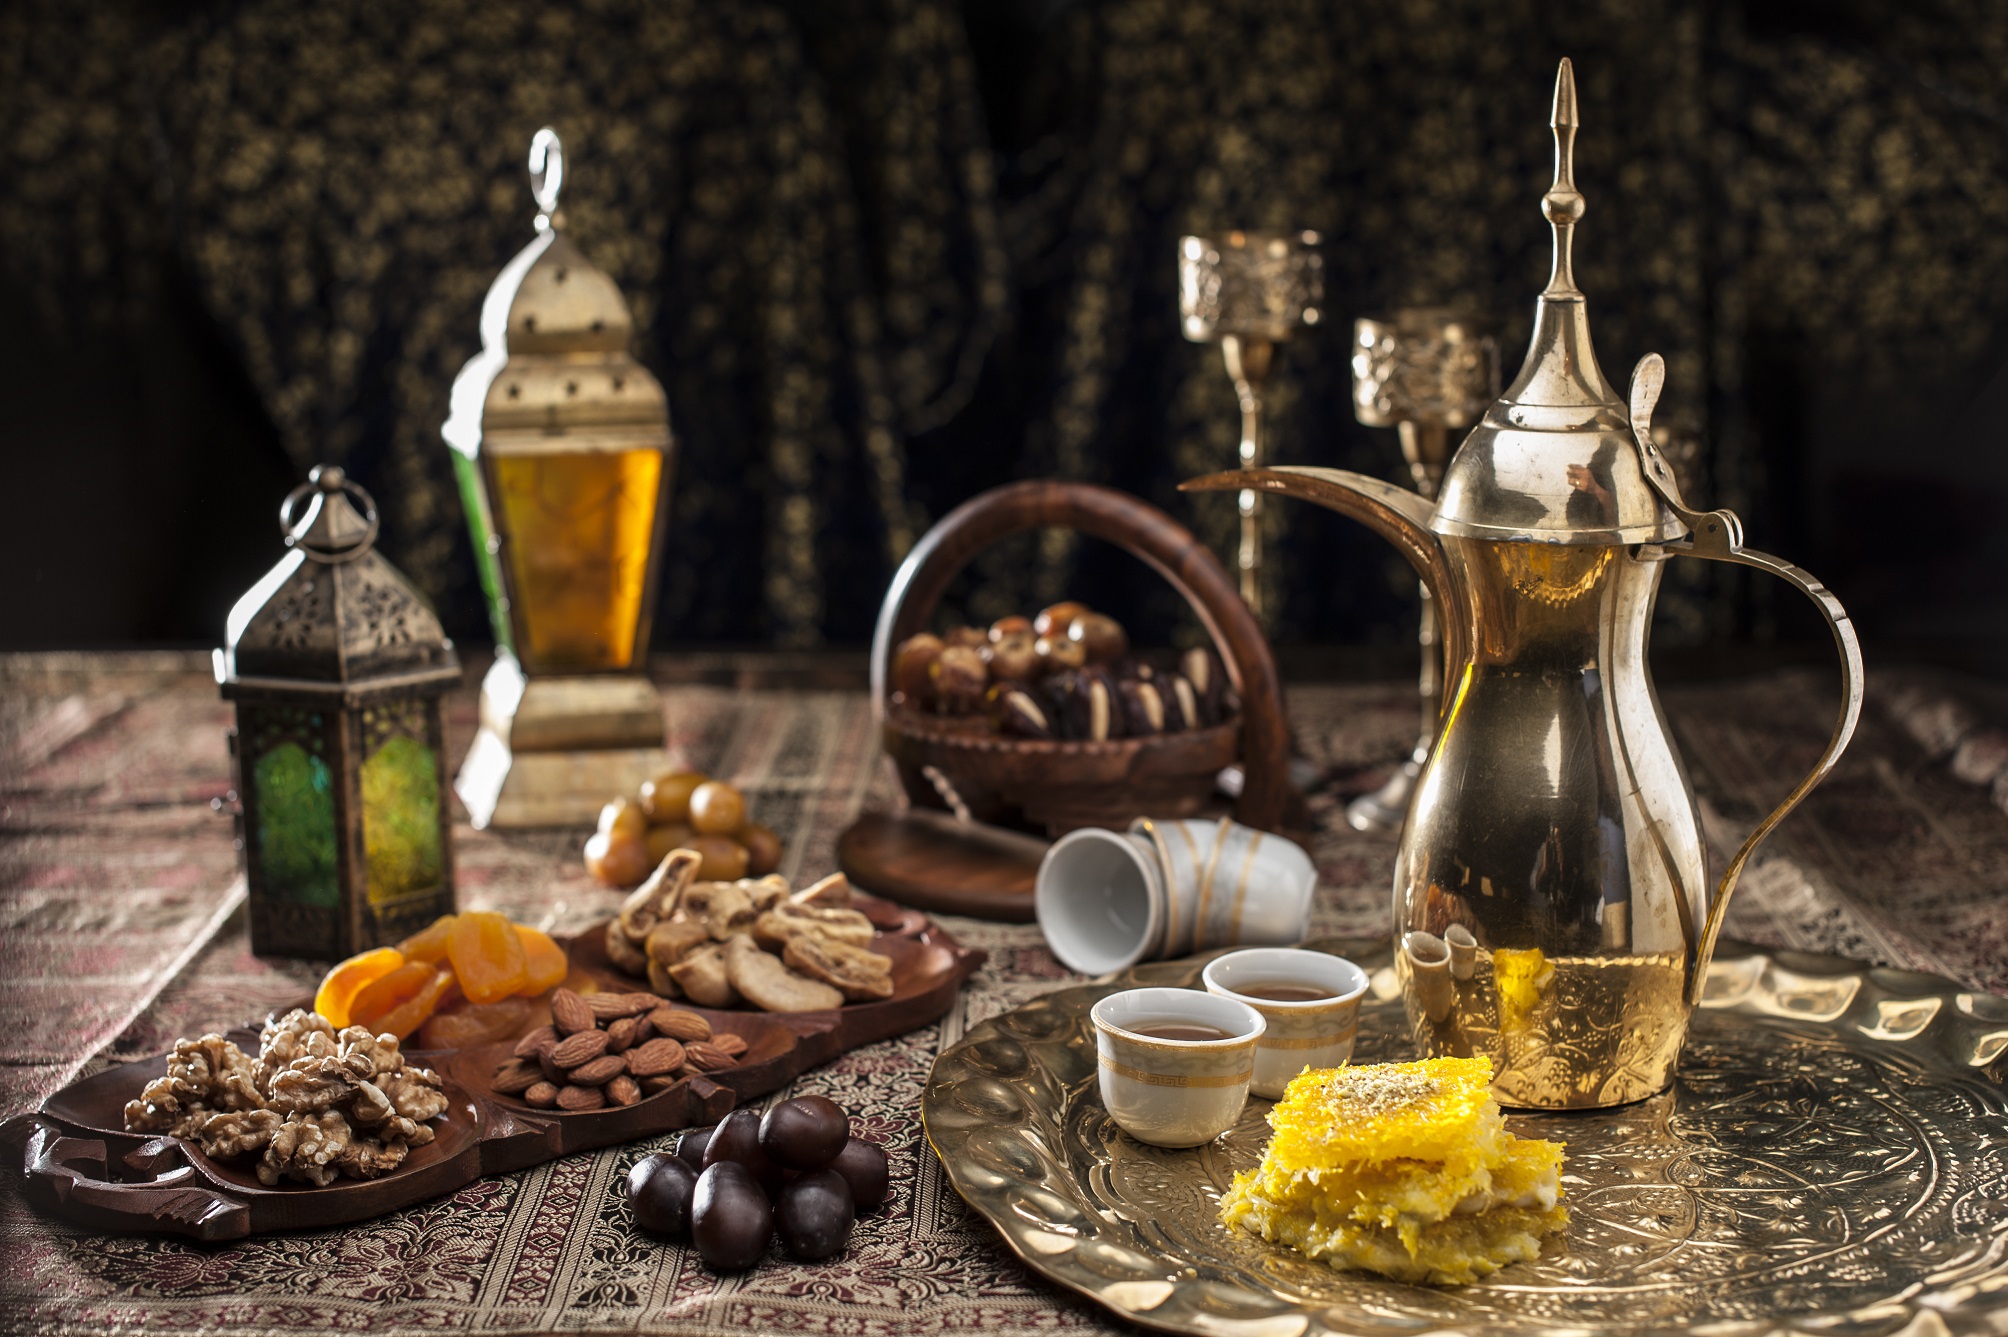 لا تفوتوا إختبار أفضل تجربة ضيافة عربية أصيلة في دبي خلال رمضان 2019